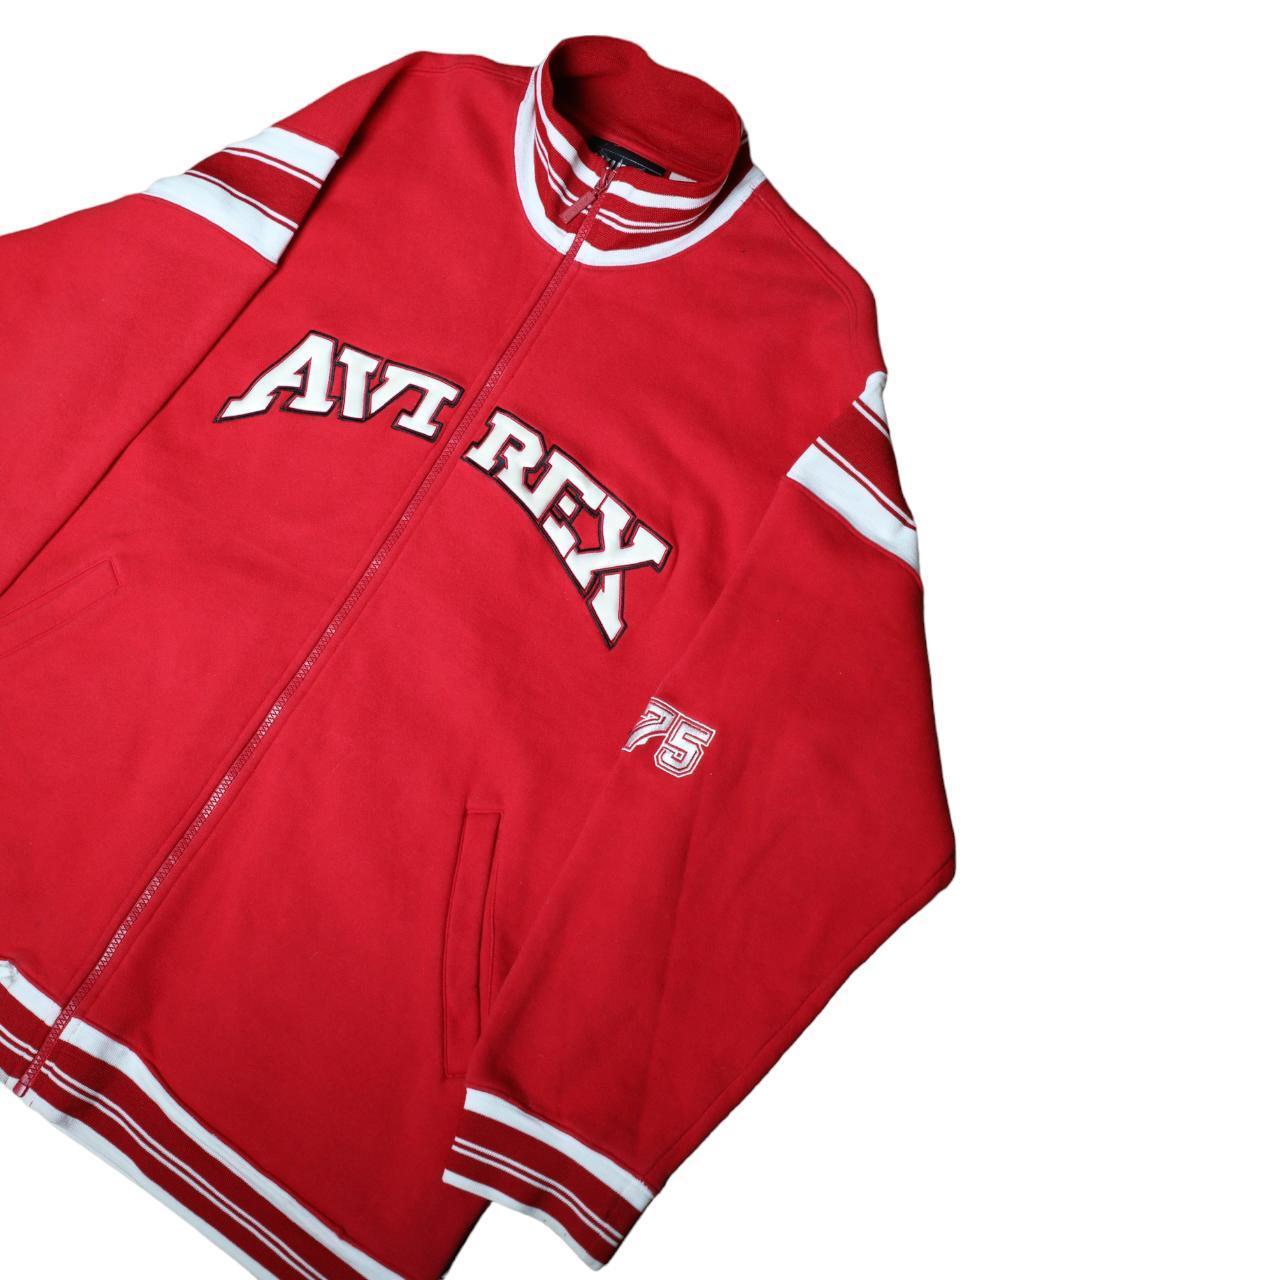 Avirex red zip up college jumper